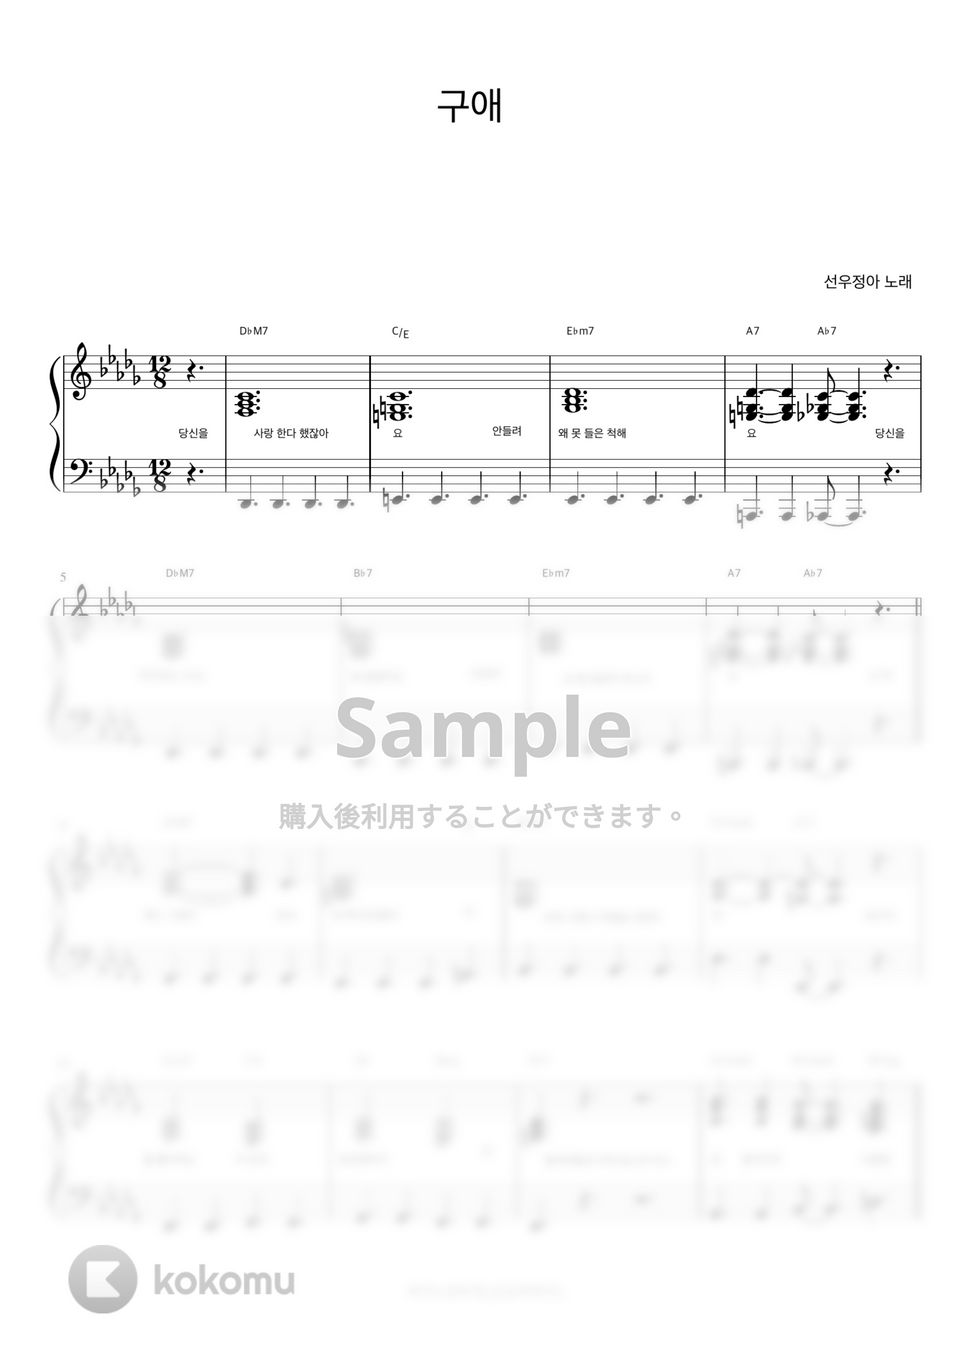 ソヌ・ジョンア - 求愛 (伴奏楽譜) by 피아노정류장